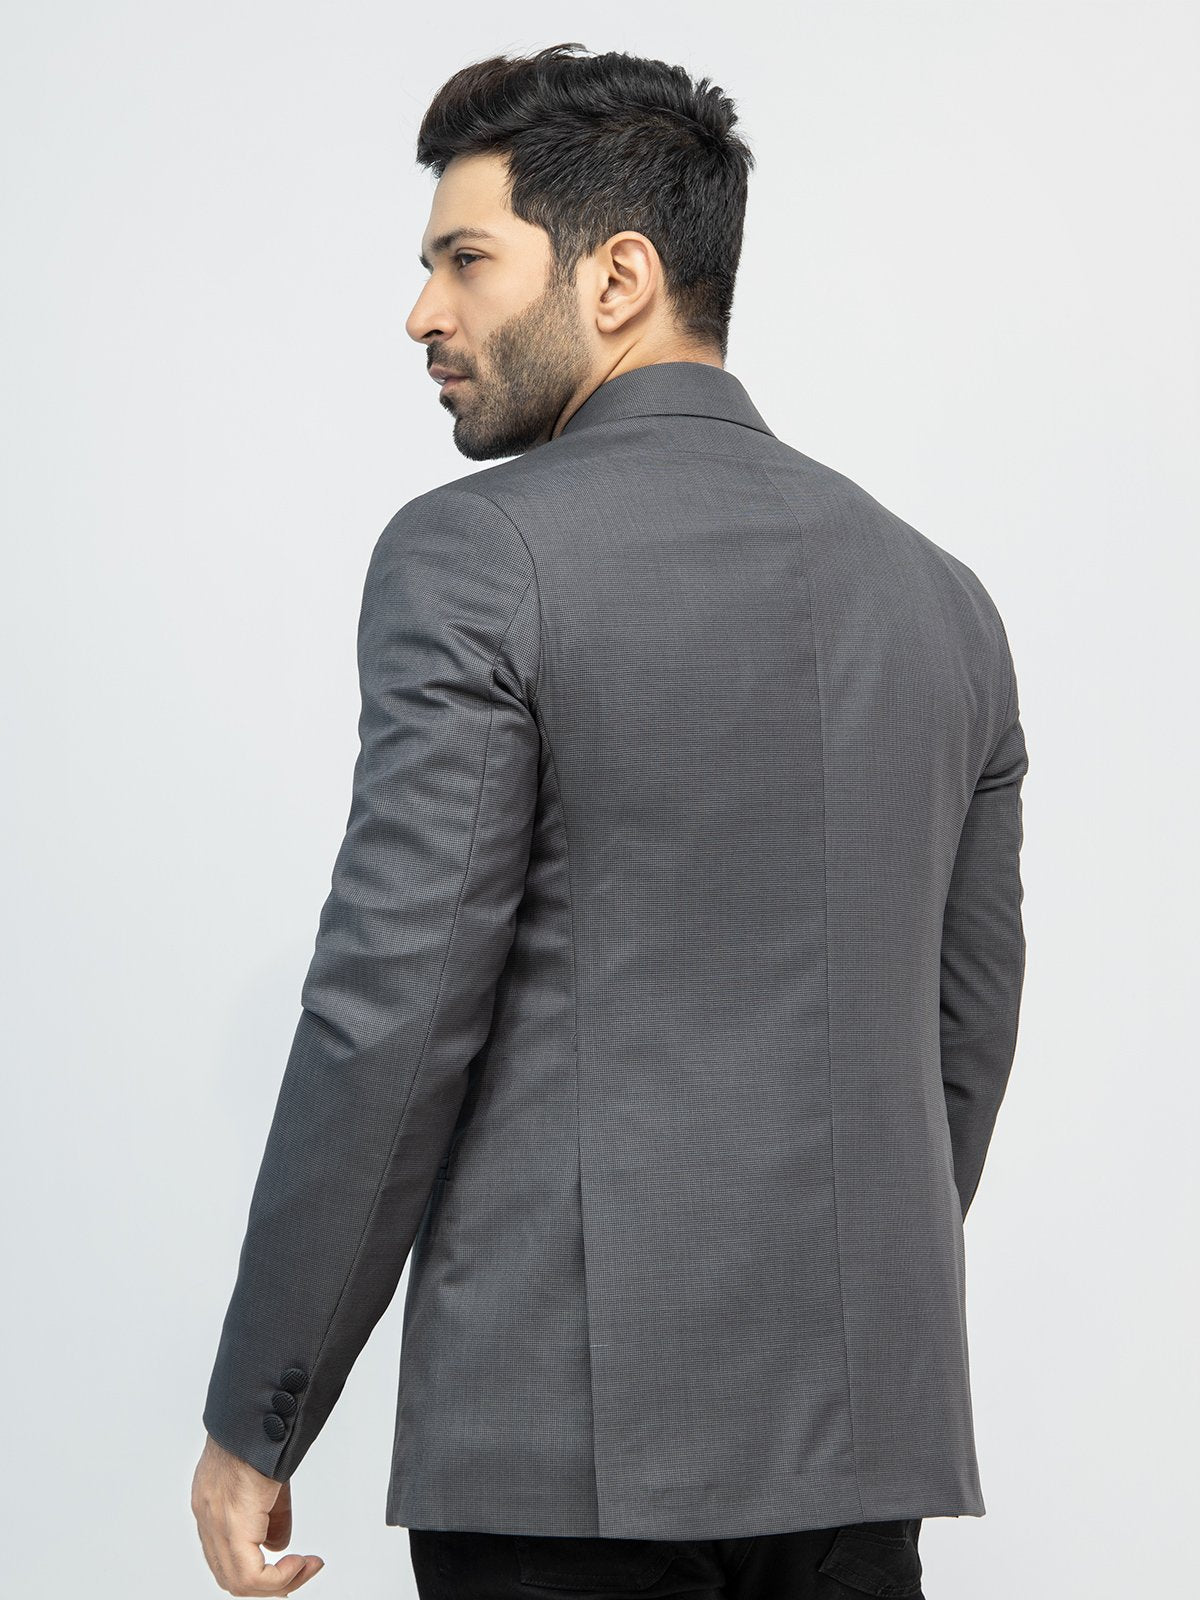 edenrobe Men's Charcoal Blazer - EMTB21-6735 – edenrobe Pakistan